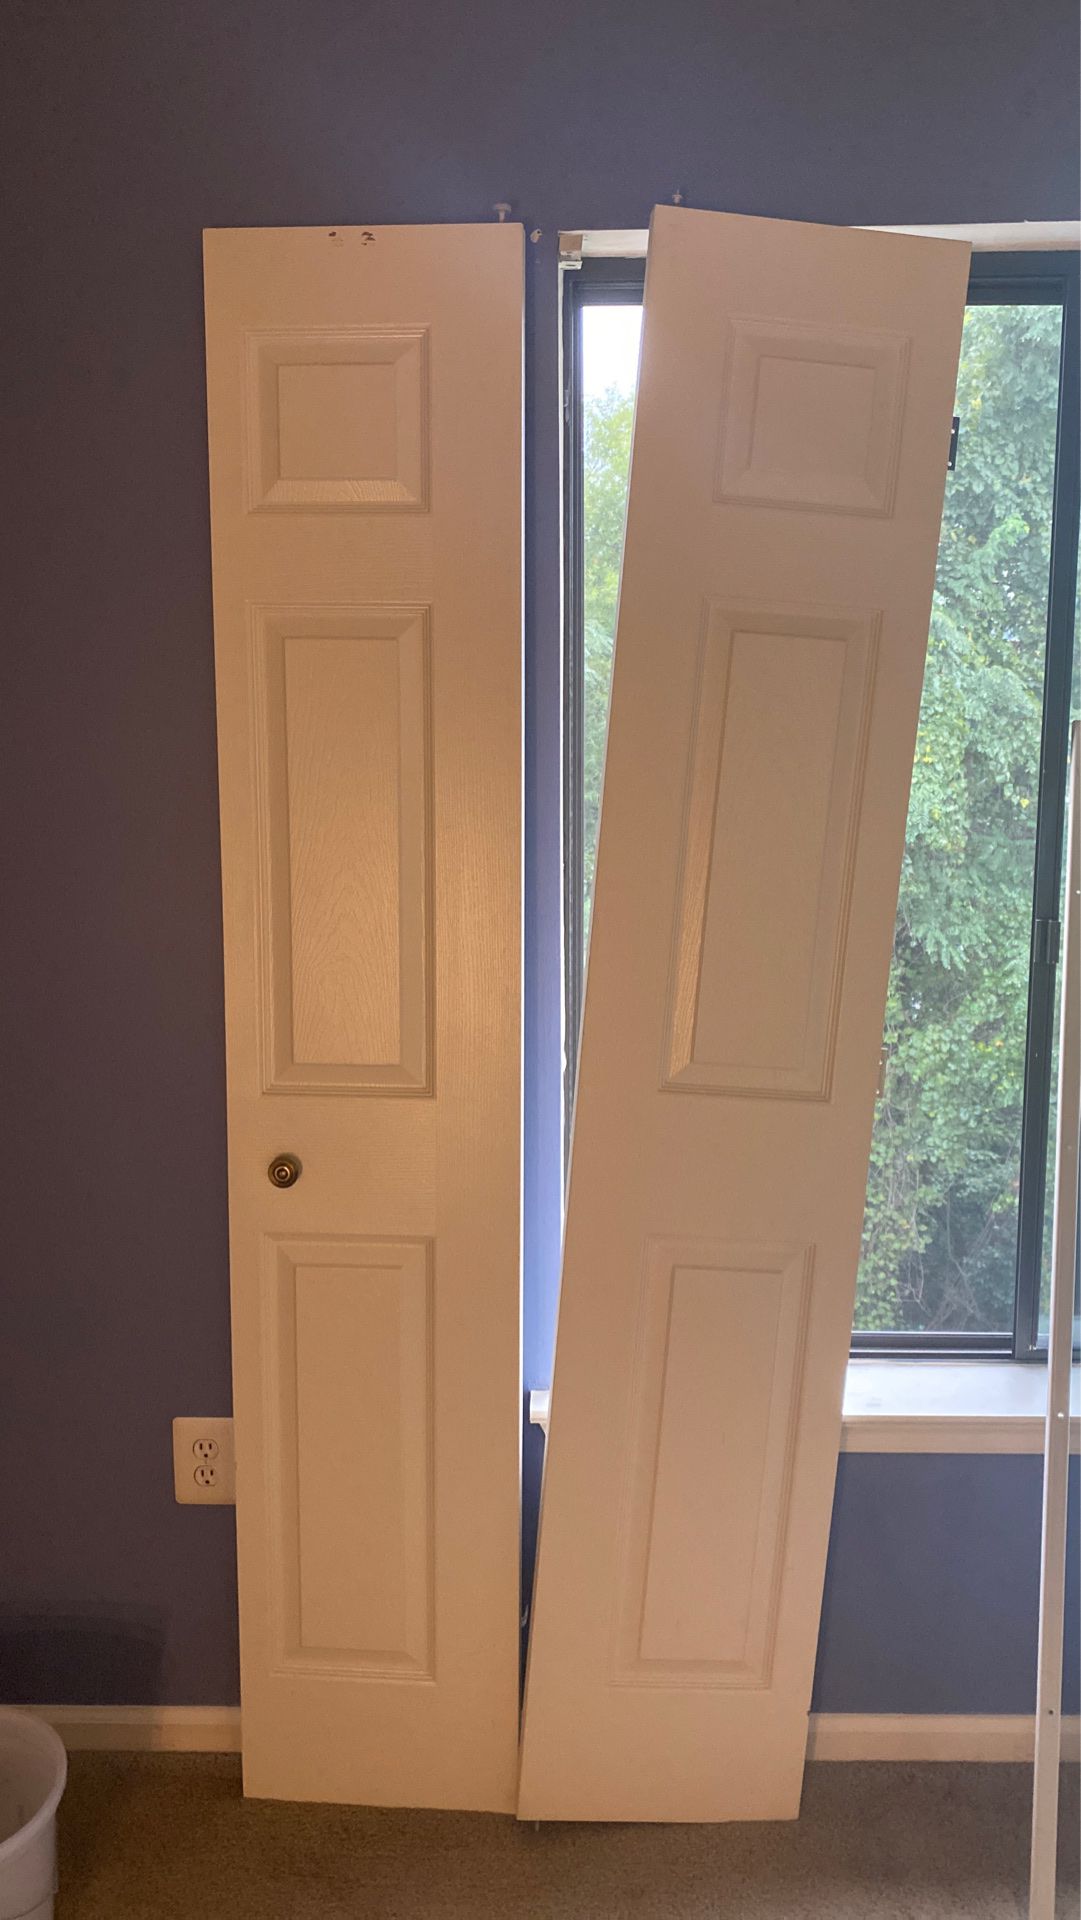 Pair of folding closet doors